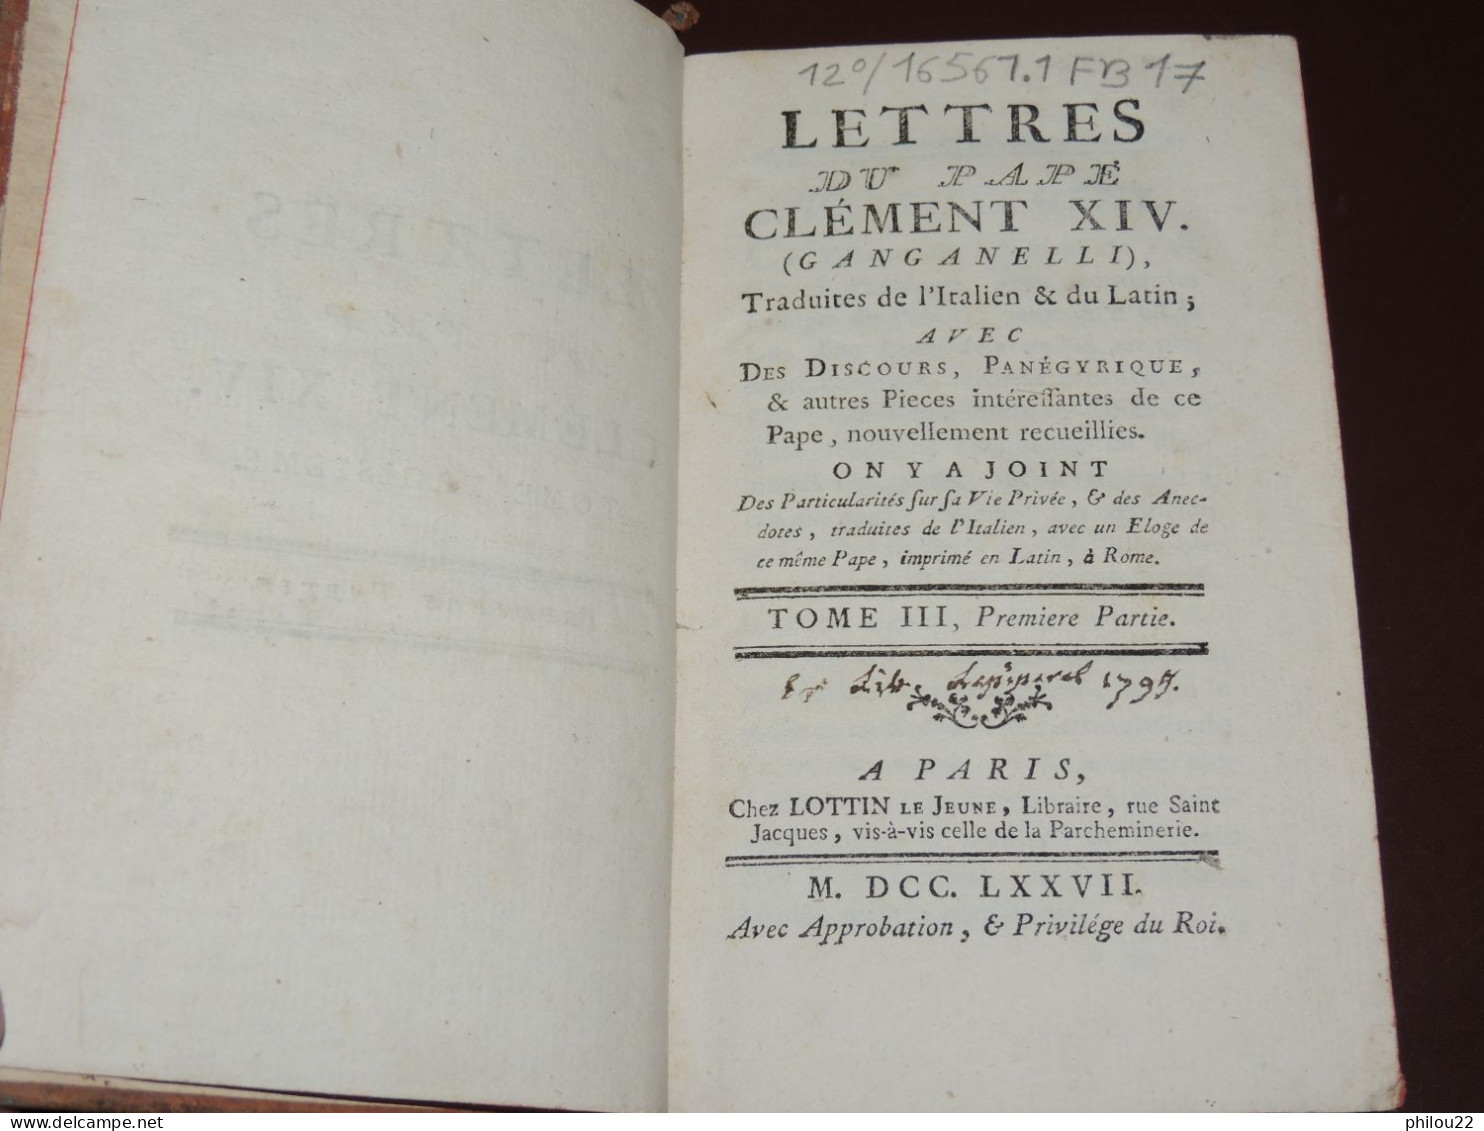 Lettres intéressantes du pape Clément XIV (Ganganelli) - 3 tomes en 2 vols. 1776